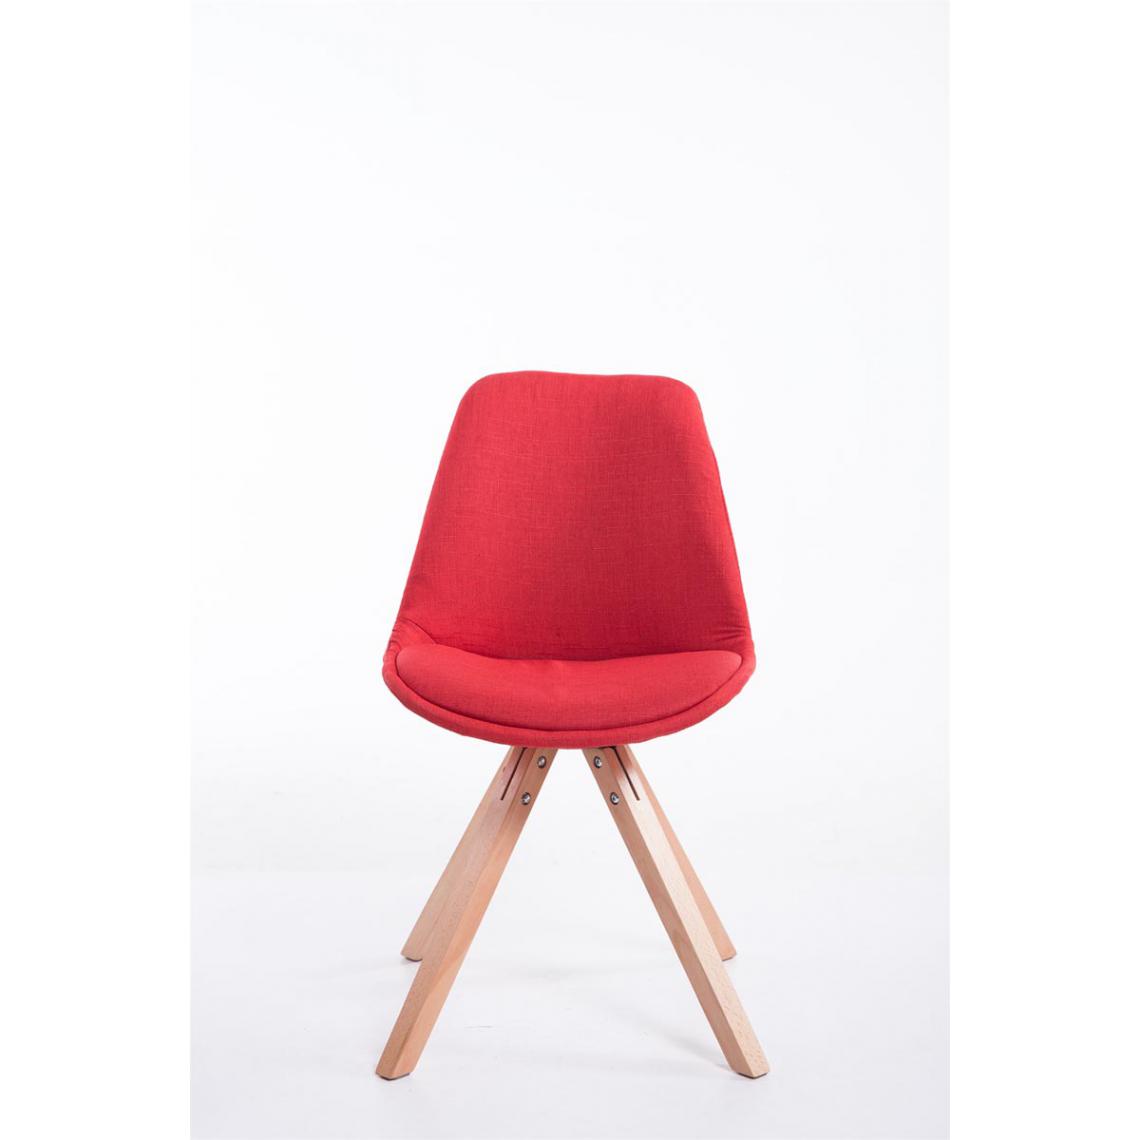 Icaverne - Moderne Chaise visiteur serie Katmandou tissu Square Natura (chêne) couleur rouge - Chaises